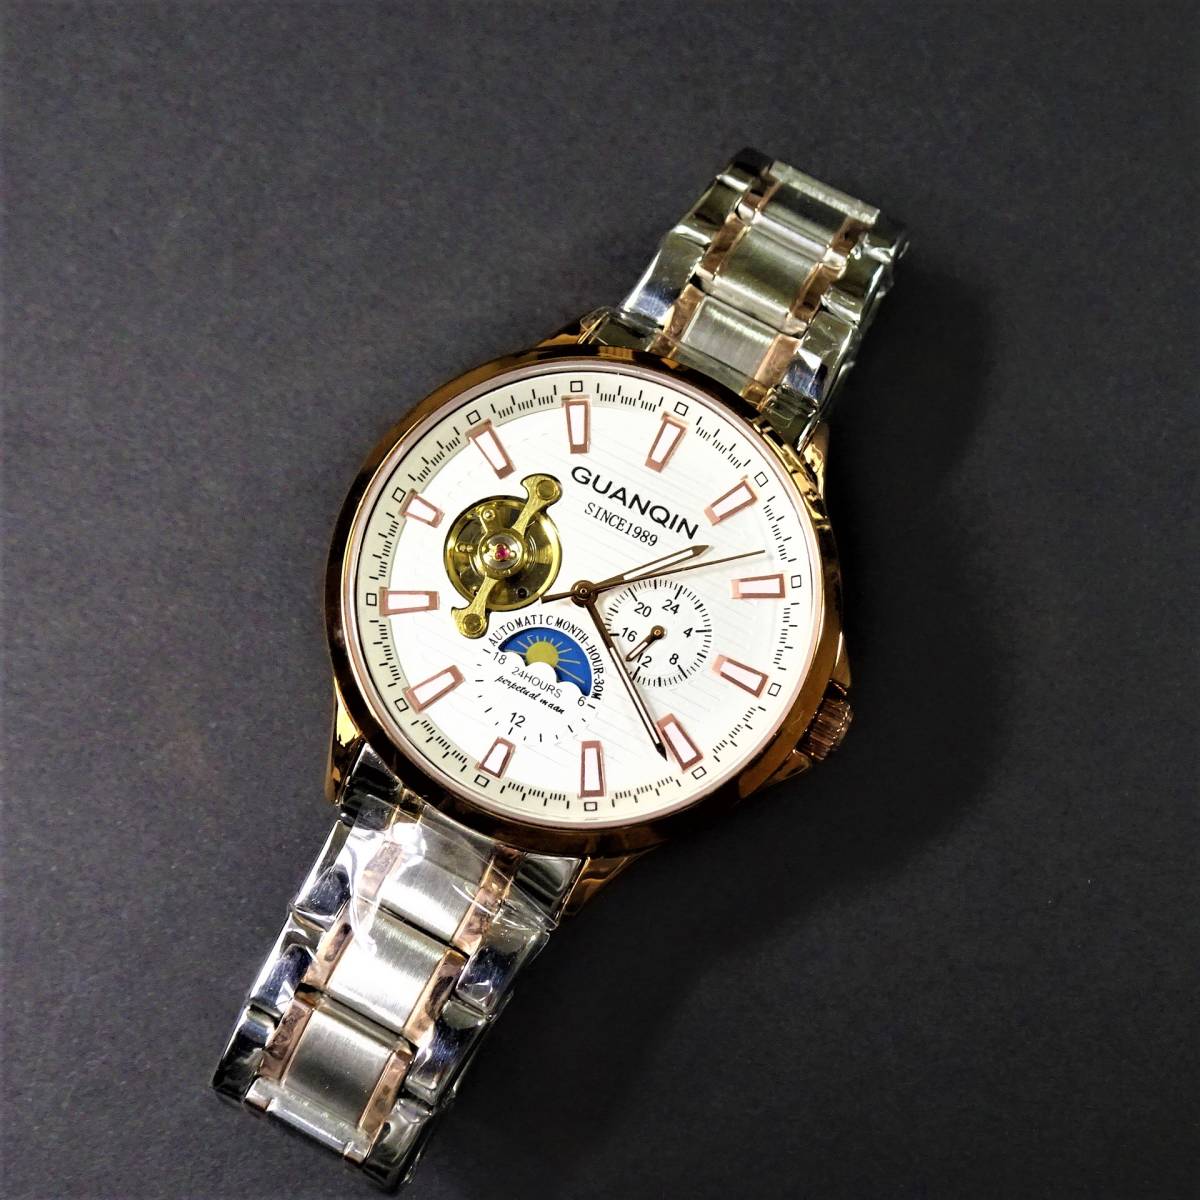 未使用・新品・GUANQINブランド・トゥールビヨンデザインautomatic機械式腕時計・ステンレス製コンビカラーモデル_画像8